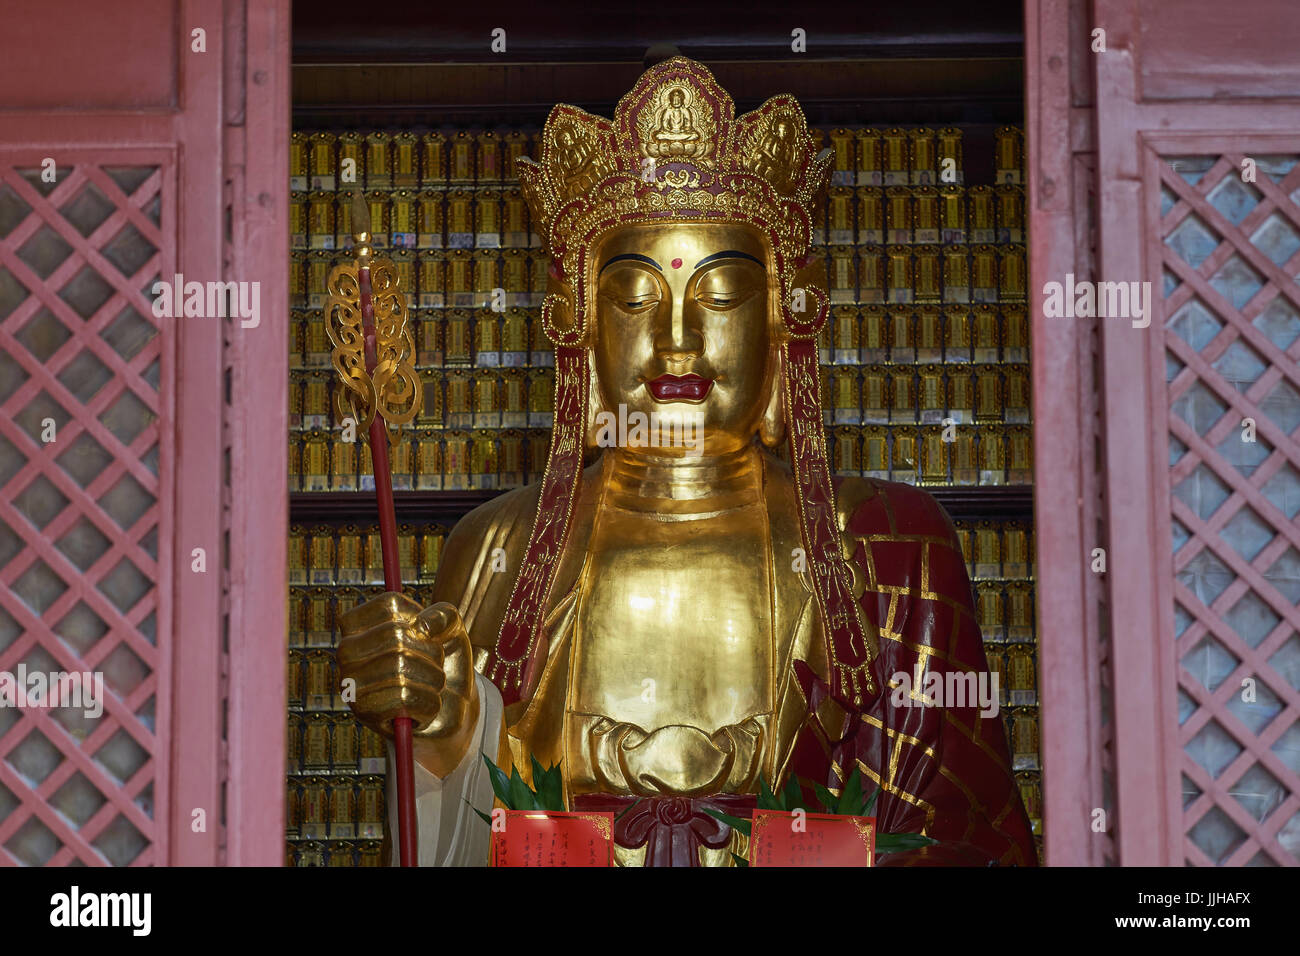 Gros plan du Golden Buddha statue in Temple Dafo (également Big Buddha Temple), l'un des temples les plus populaires de Guangzhou - Guangzhou, Chine Banque D'Images